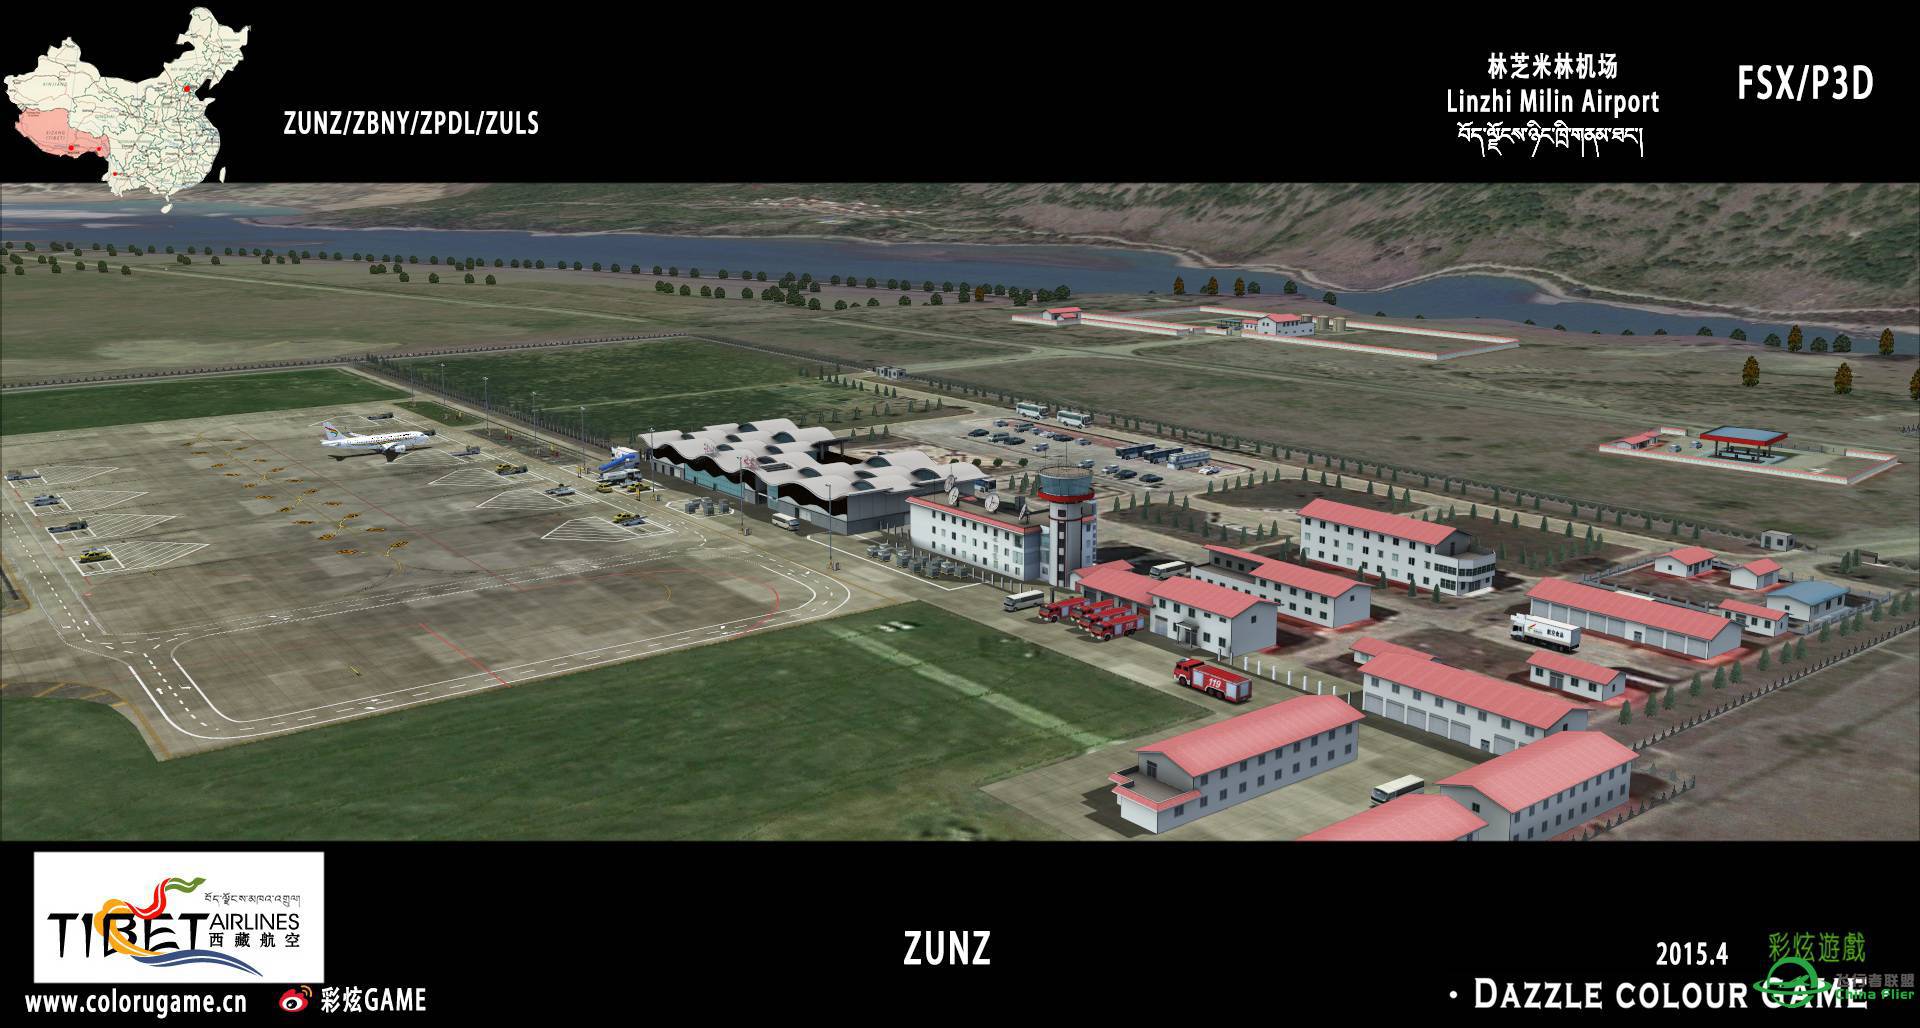 彩炫地景：林芝米林机场（ZUNZ）正式发布！-4165 